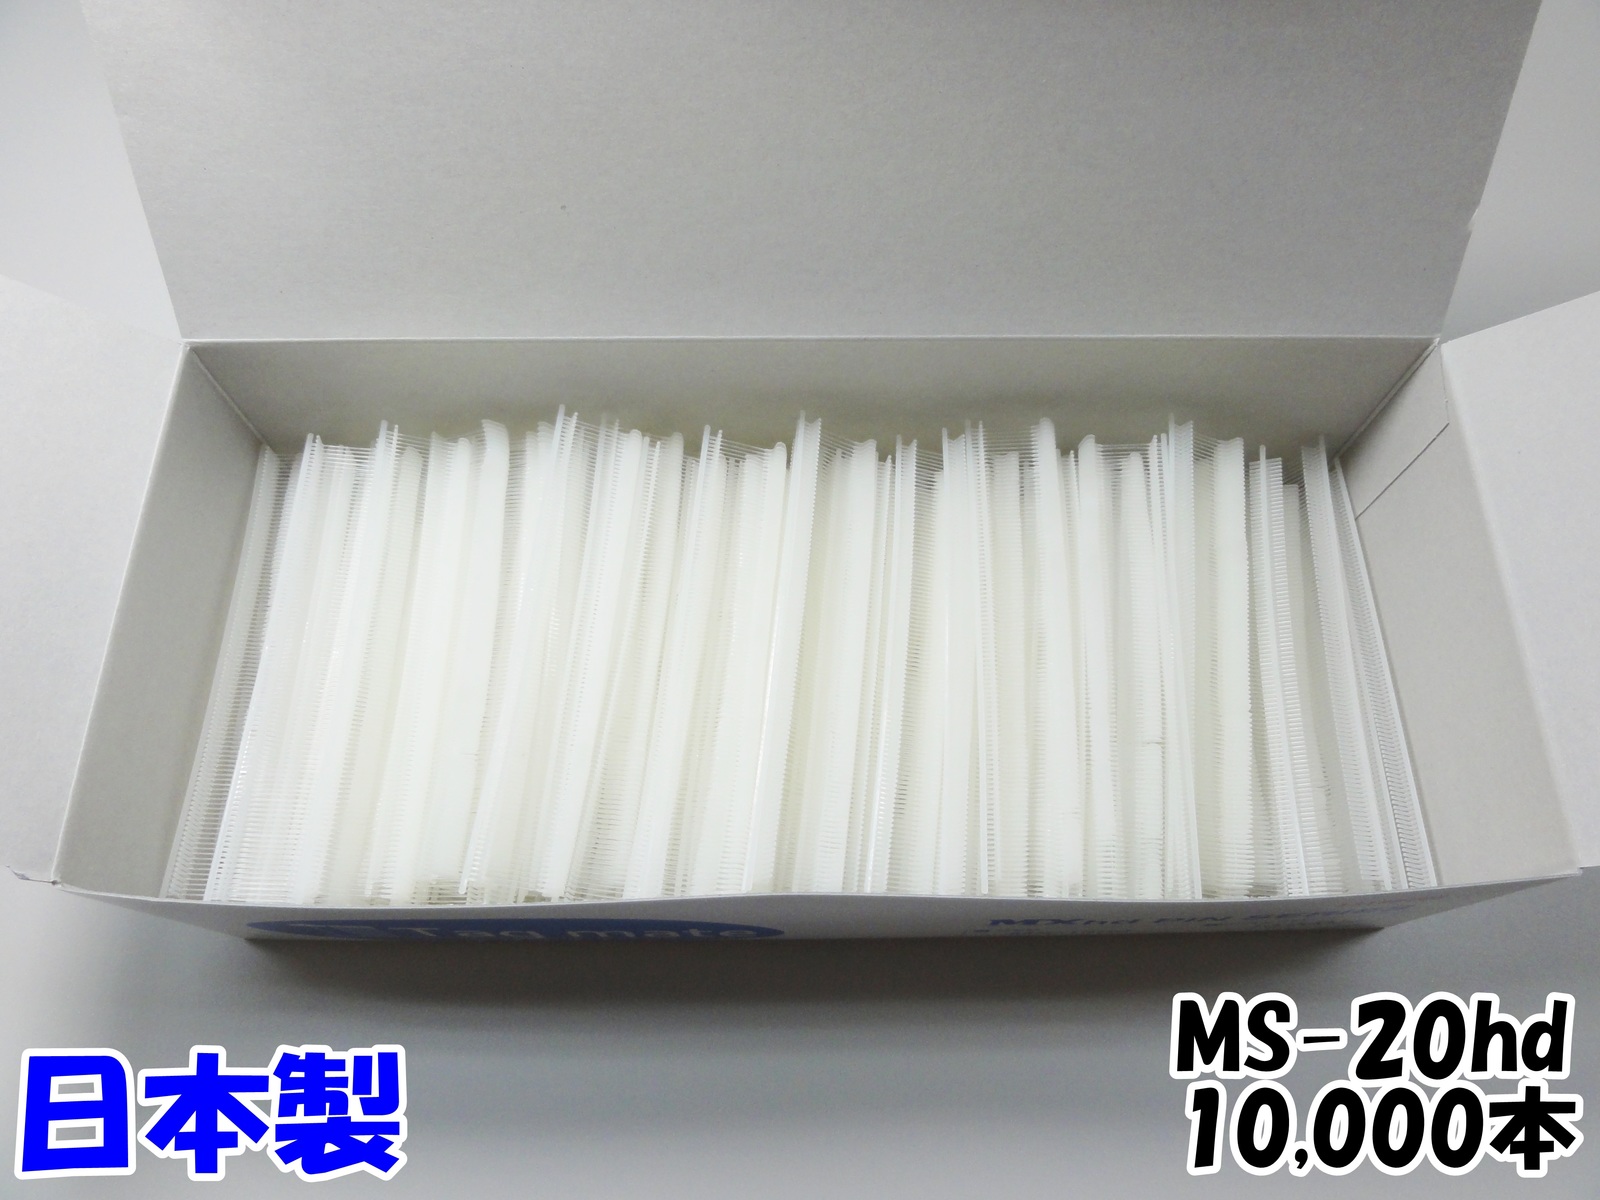 日本製のタグピン タグメイトピン 超高品質で人気の スタンダード 今年も話題の MS20hd